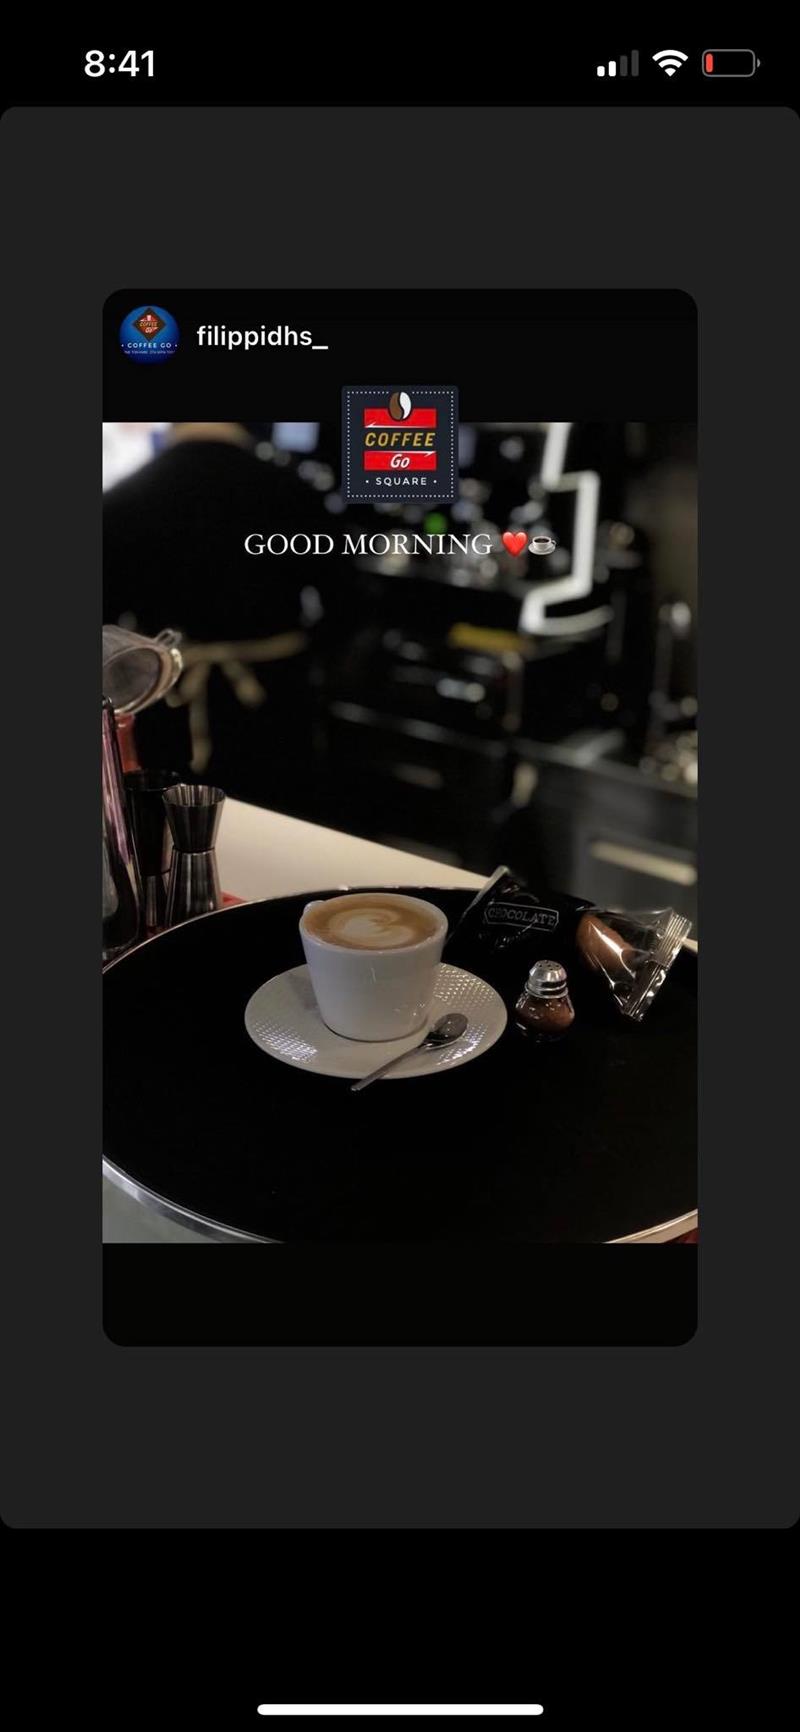 «Coffee go»: Ο μοναδικός συνδυασμός ποιότητας και ταχύτητας στην απόλαυση του καφέ σας